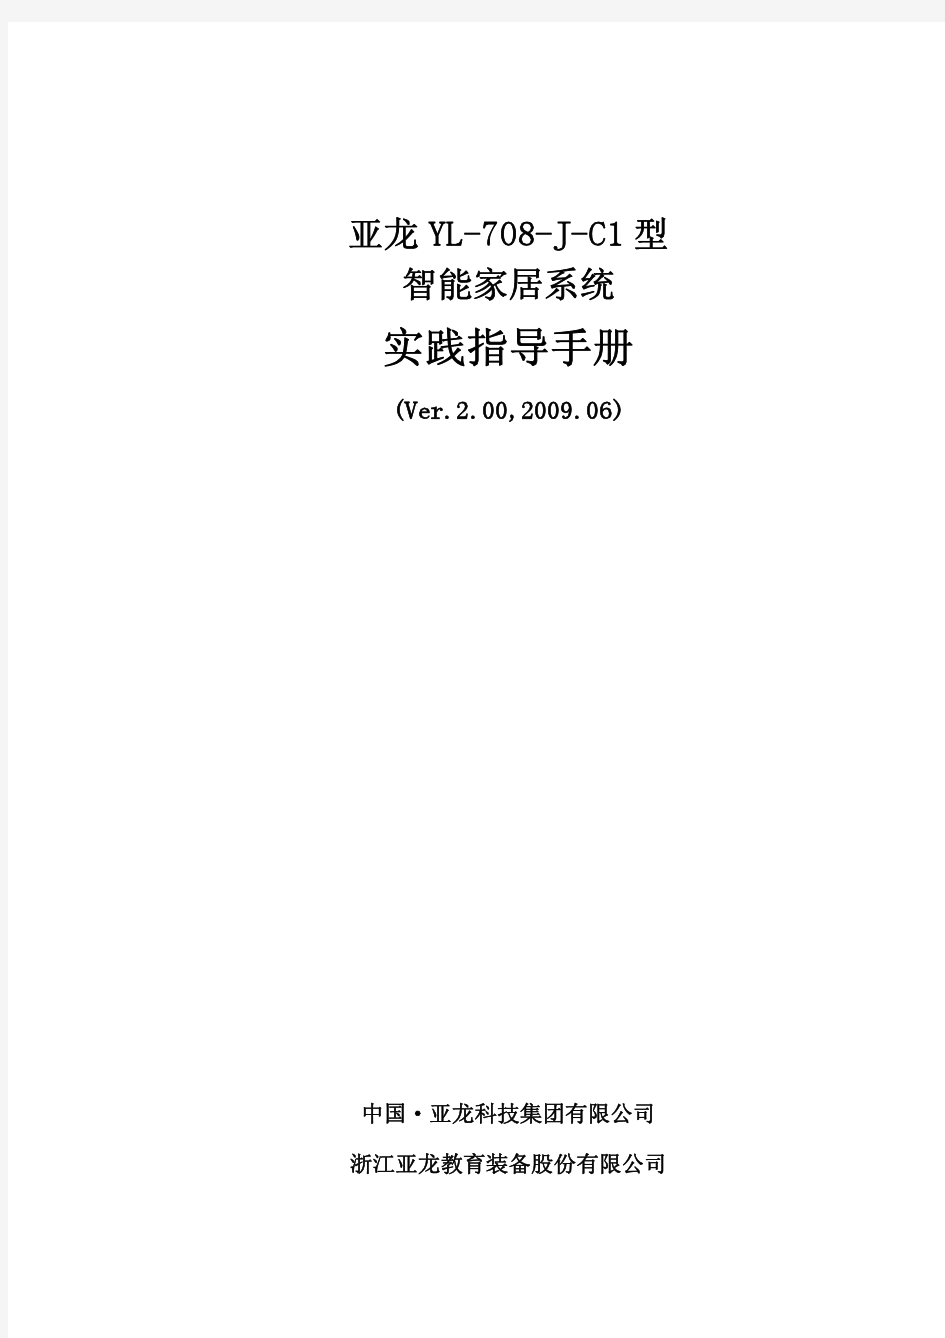 亚龙YL-708-J-C1型 智能家居系统 实践指导手册 (Ver.2.00,2009.06)